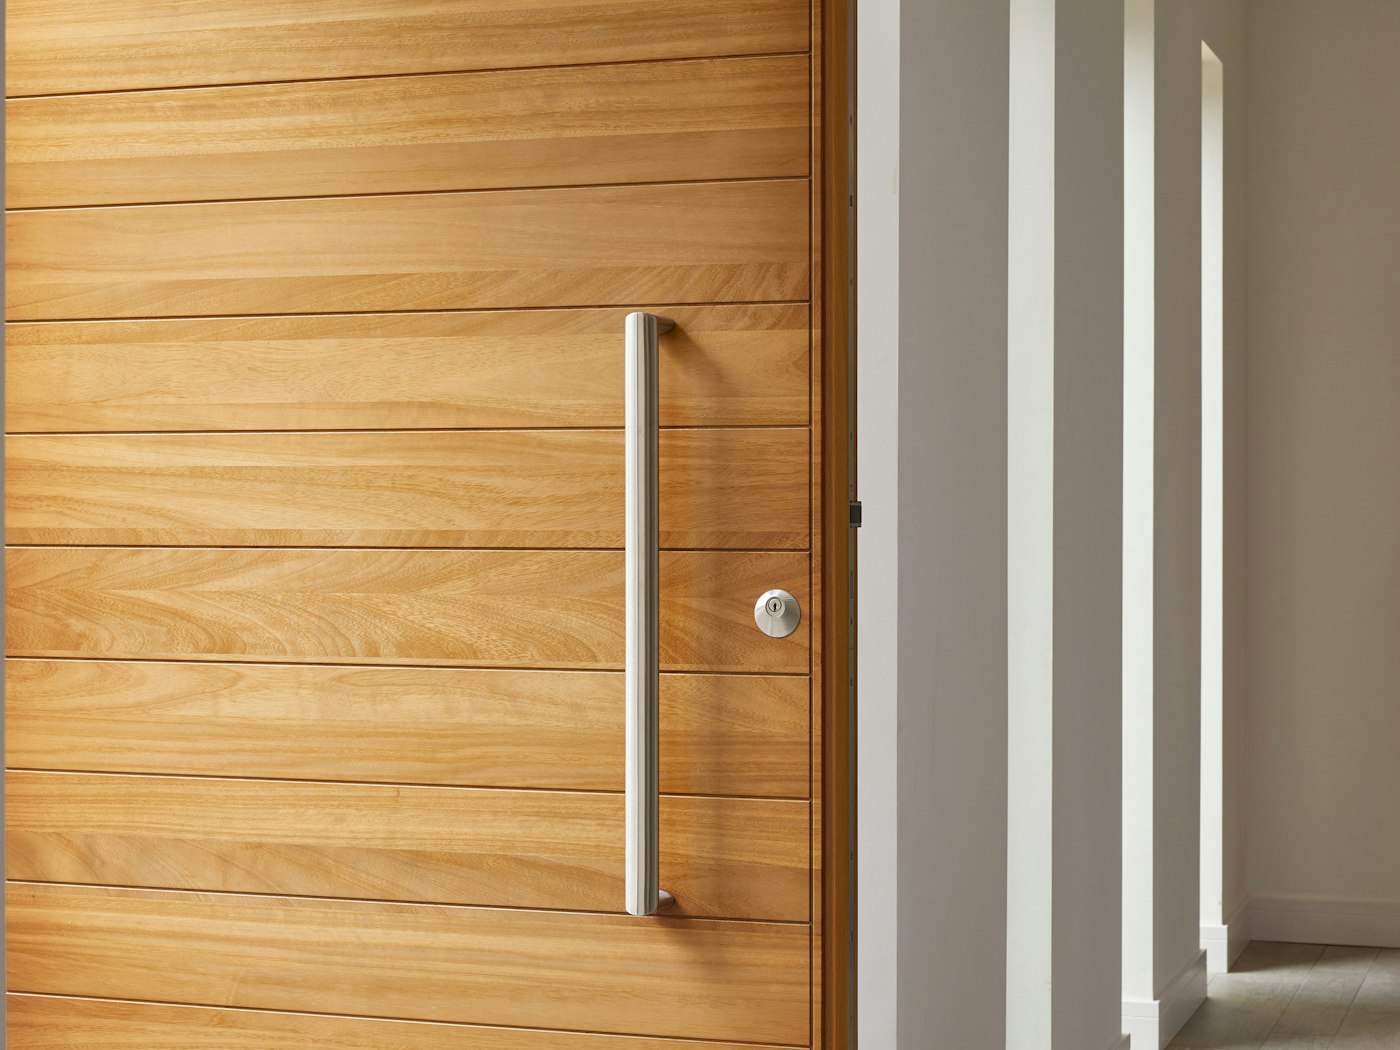 The iroko wood door in a detailed close up